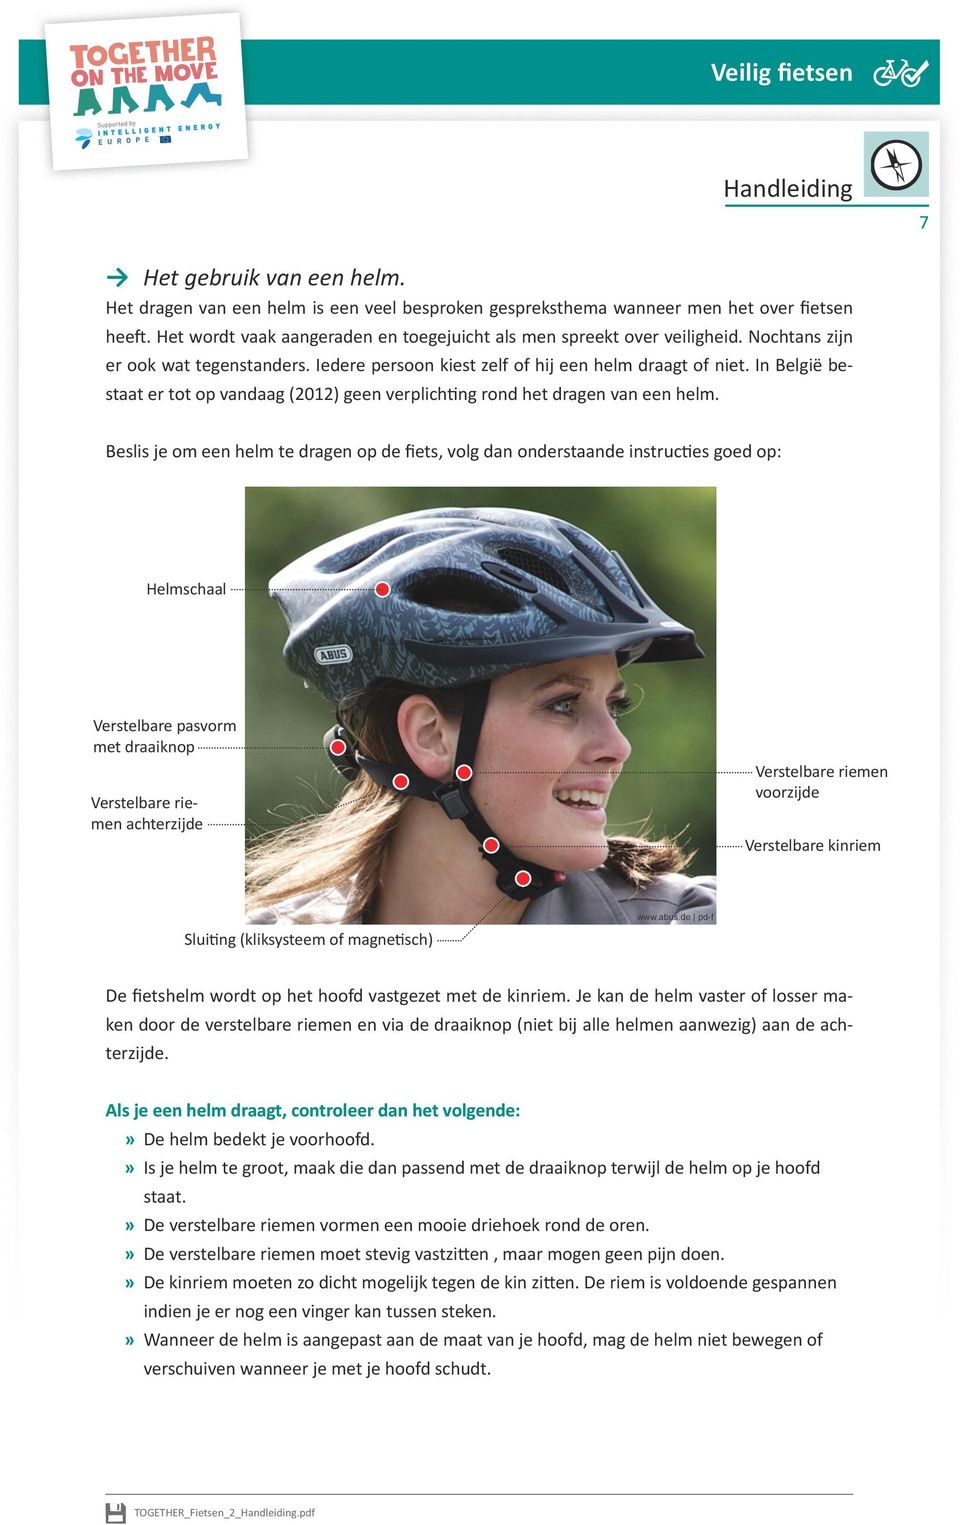 Beslis je om een helm te dragen op de fiets, volg dan onderstaande instructies goed op: Helmschaal Verstelbare pasvorm met draaiknop Verstelbare riemen achterzijde Verstelbare riemen voorzijde